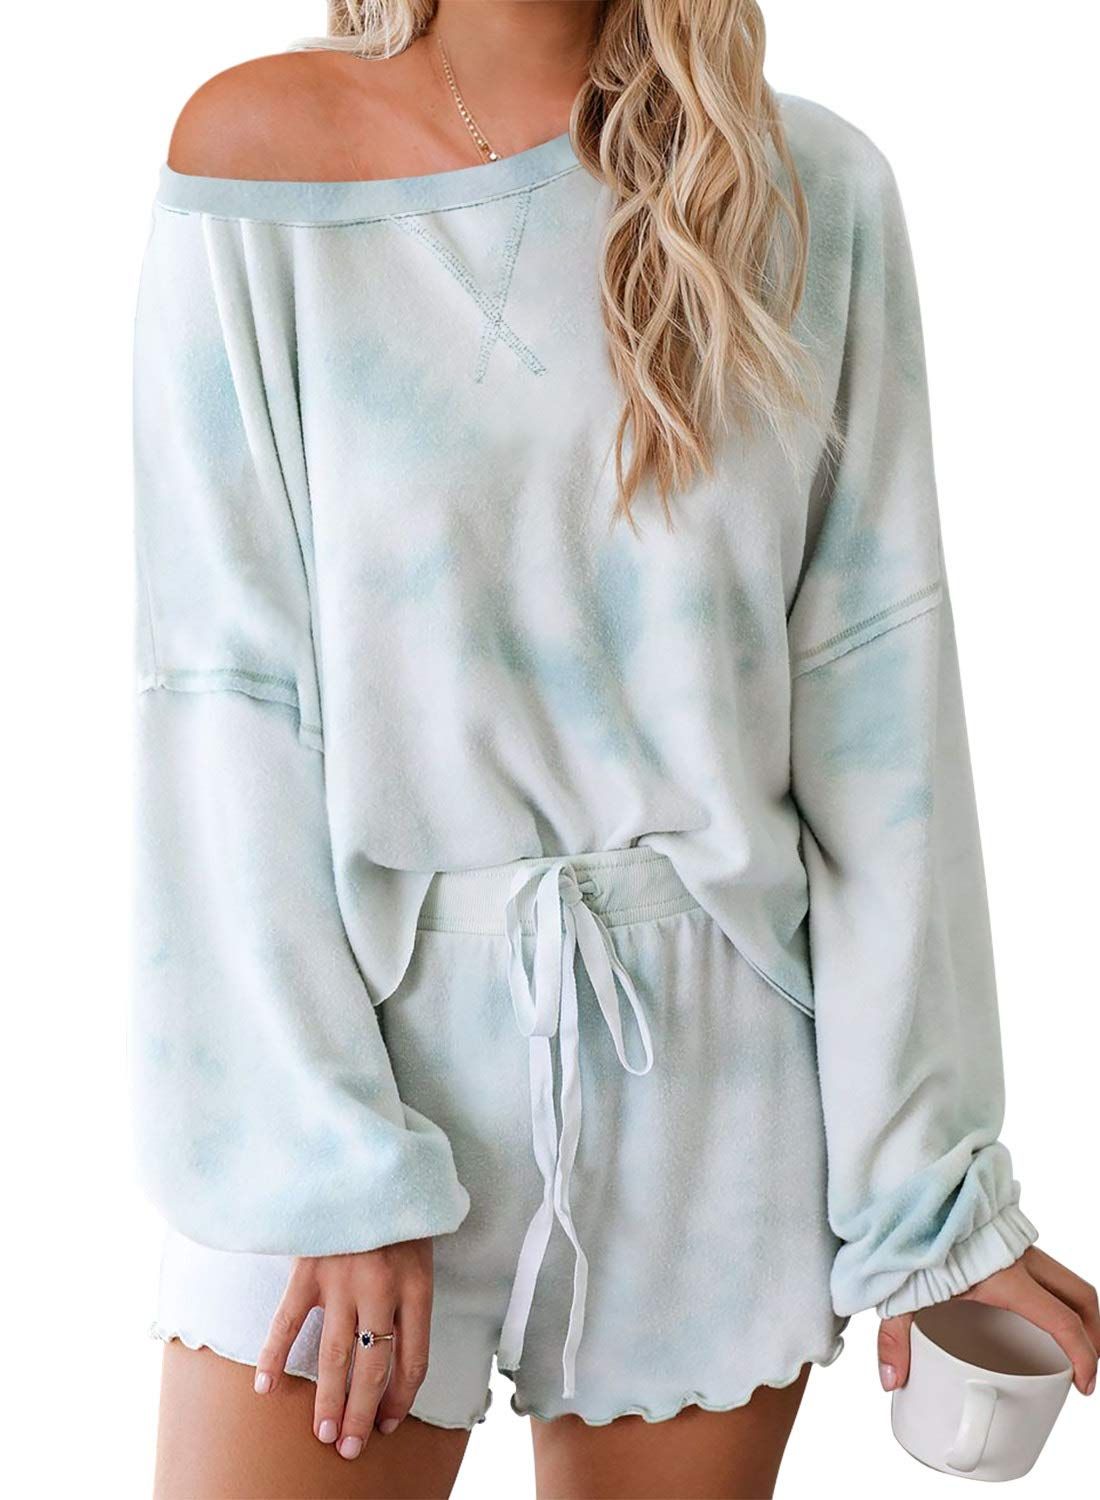 Women's Shorts Pajama Set Long Sleeve Tops Sleepwear Nightwear Loungewear Pjs | Amazon (US)